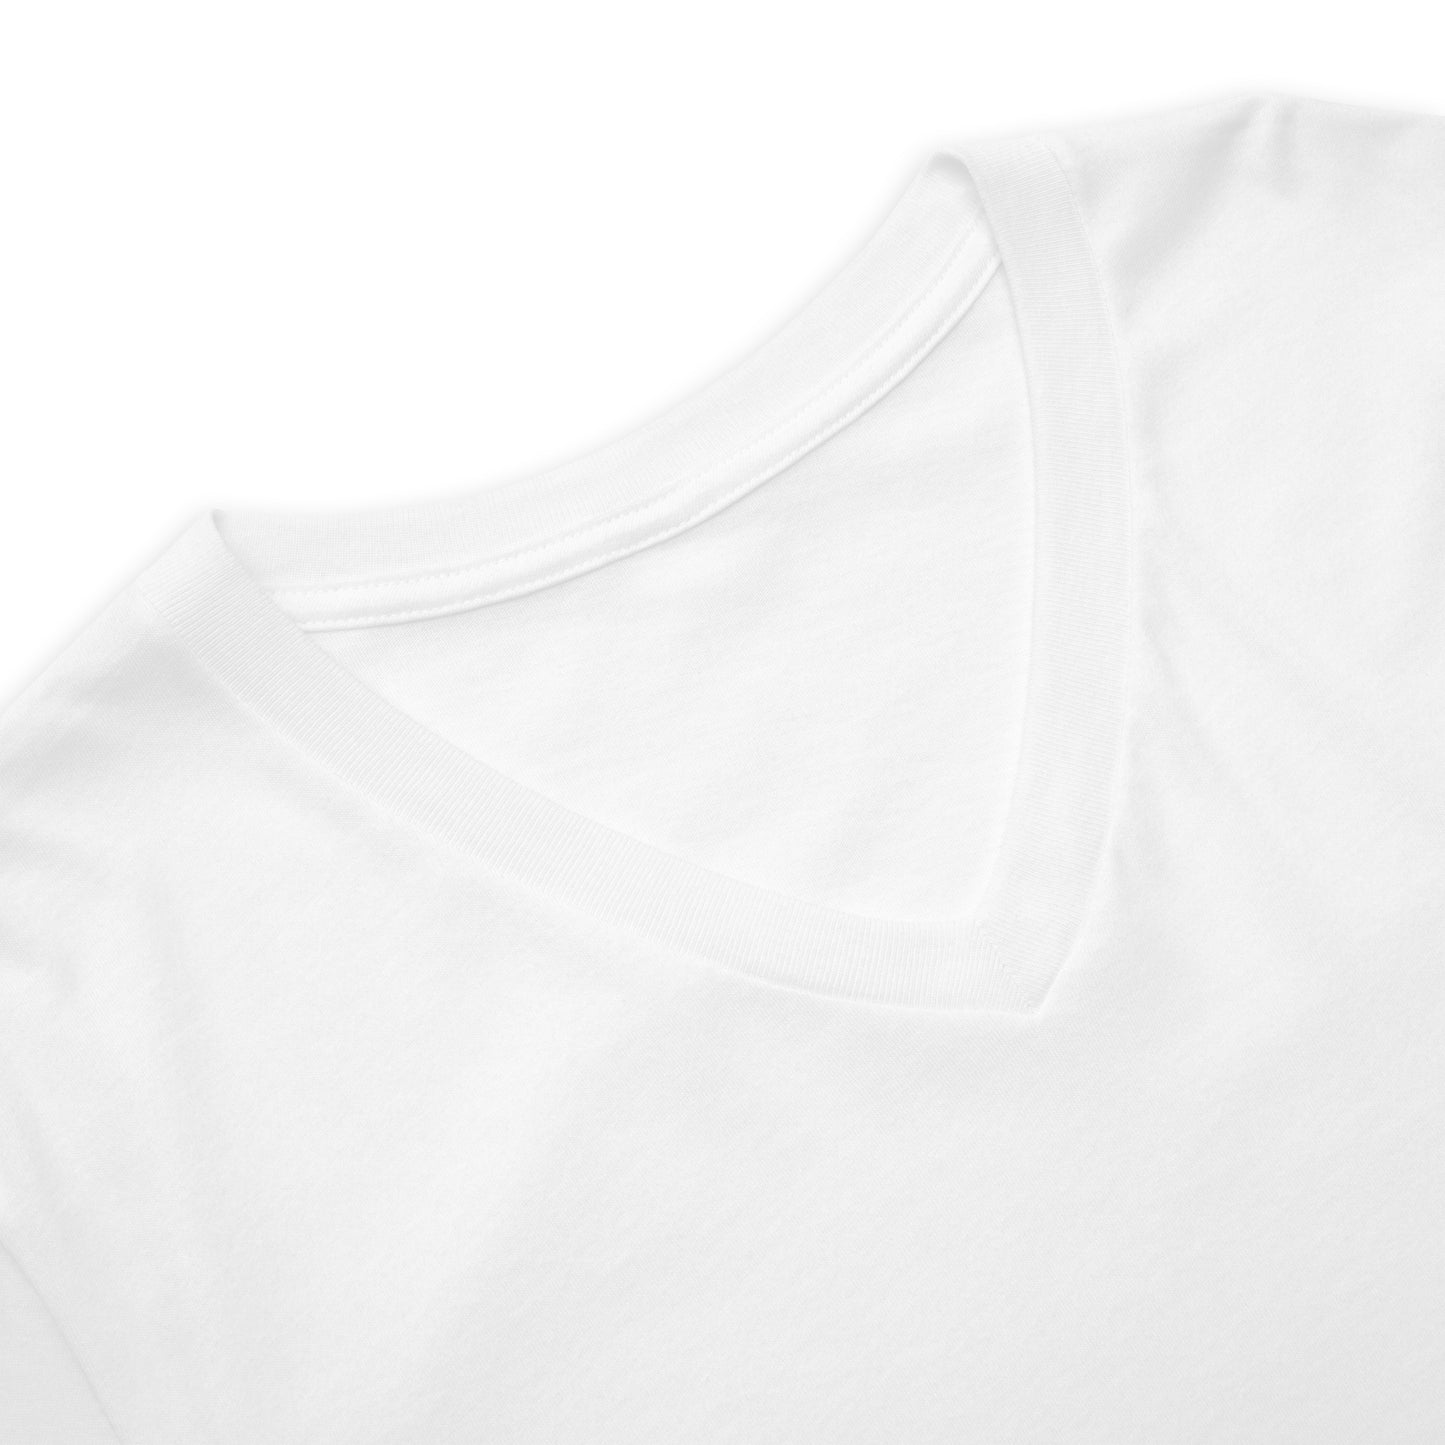 Camiseta Blanca Cuello V Pack 3 - Elegancia y calidad en nuestra insignia. Descubre la perfección del algodón premium importado. Paquete de 3